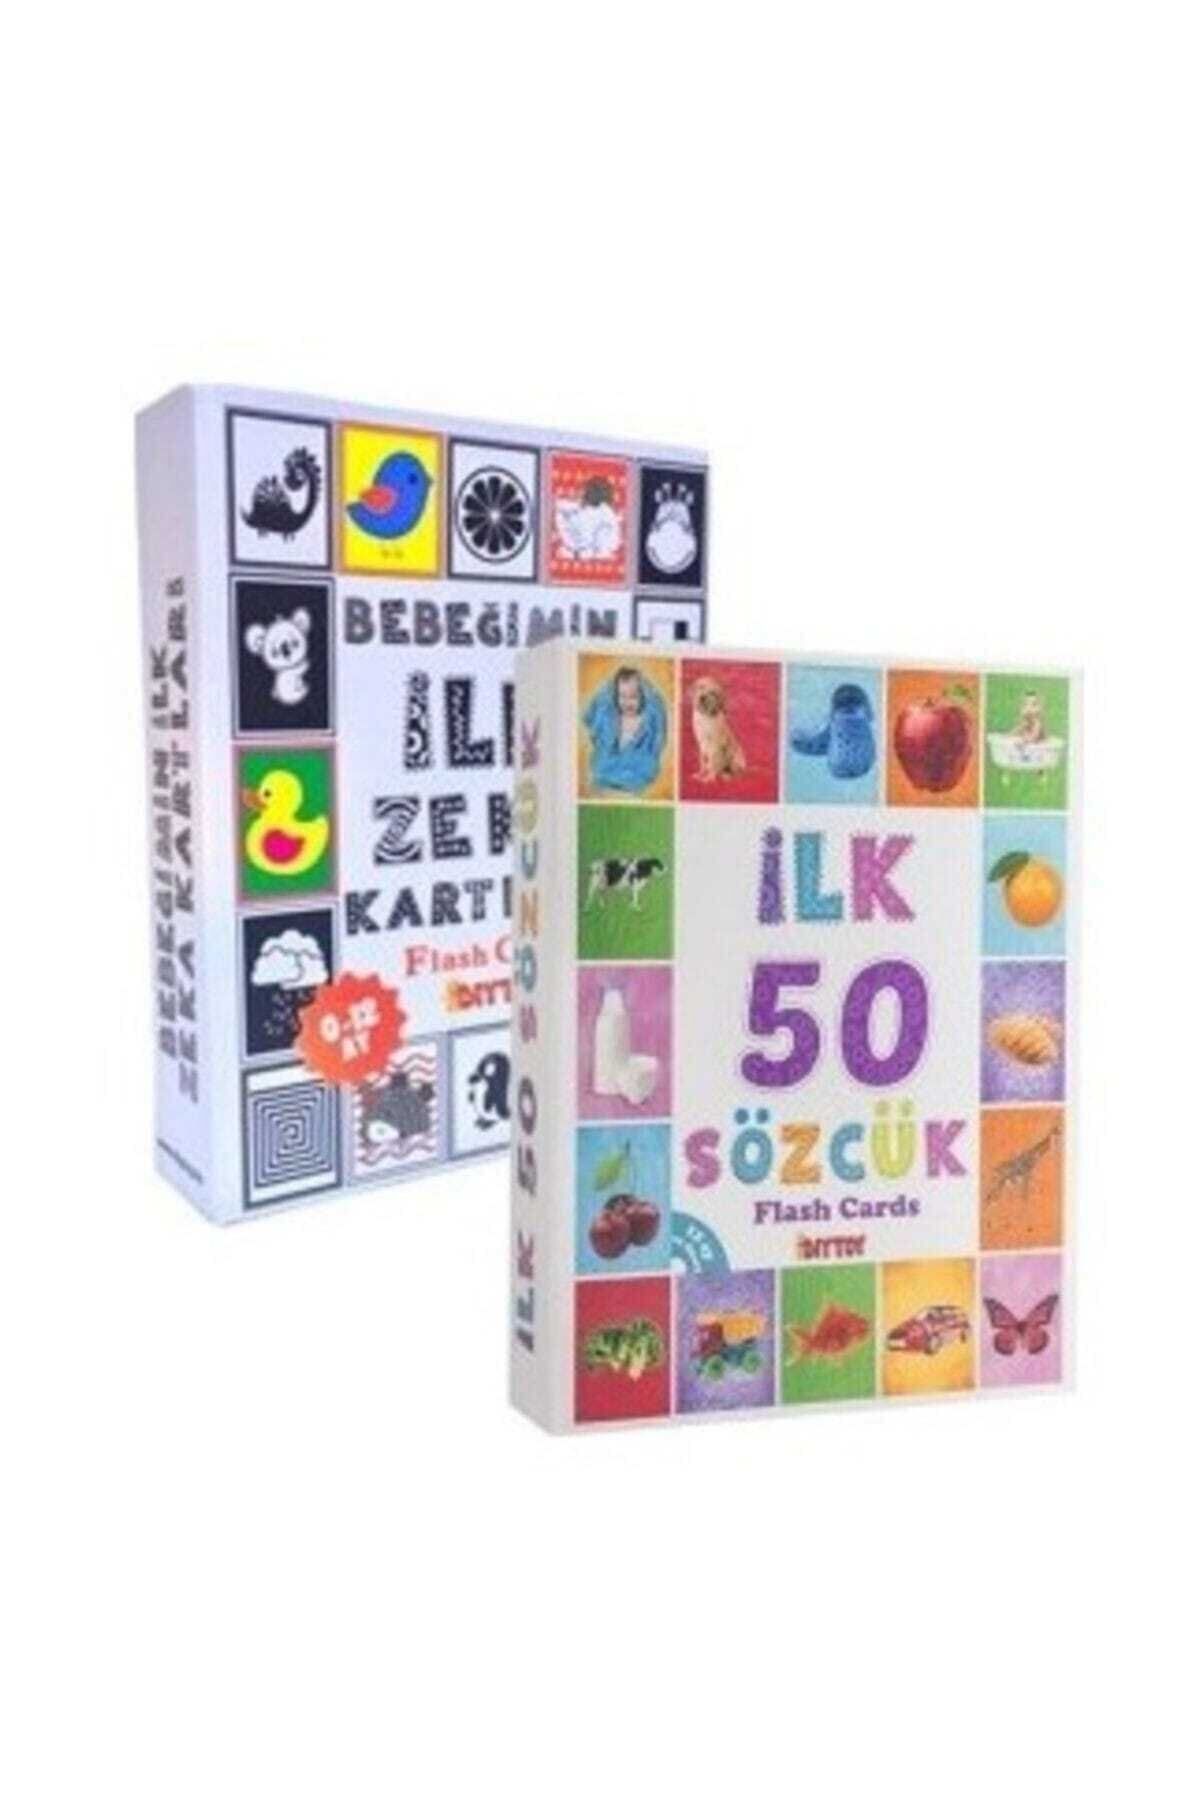 Diytoy Bebeğimin Ilk Zeka Kartları Ve Diy-toy Flash Cards Ilk 50 Sözcük 2' Li Set